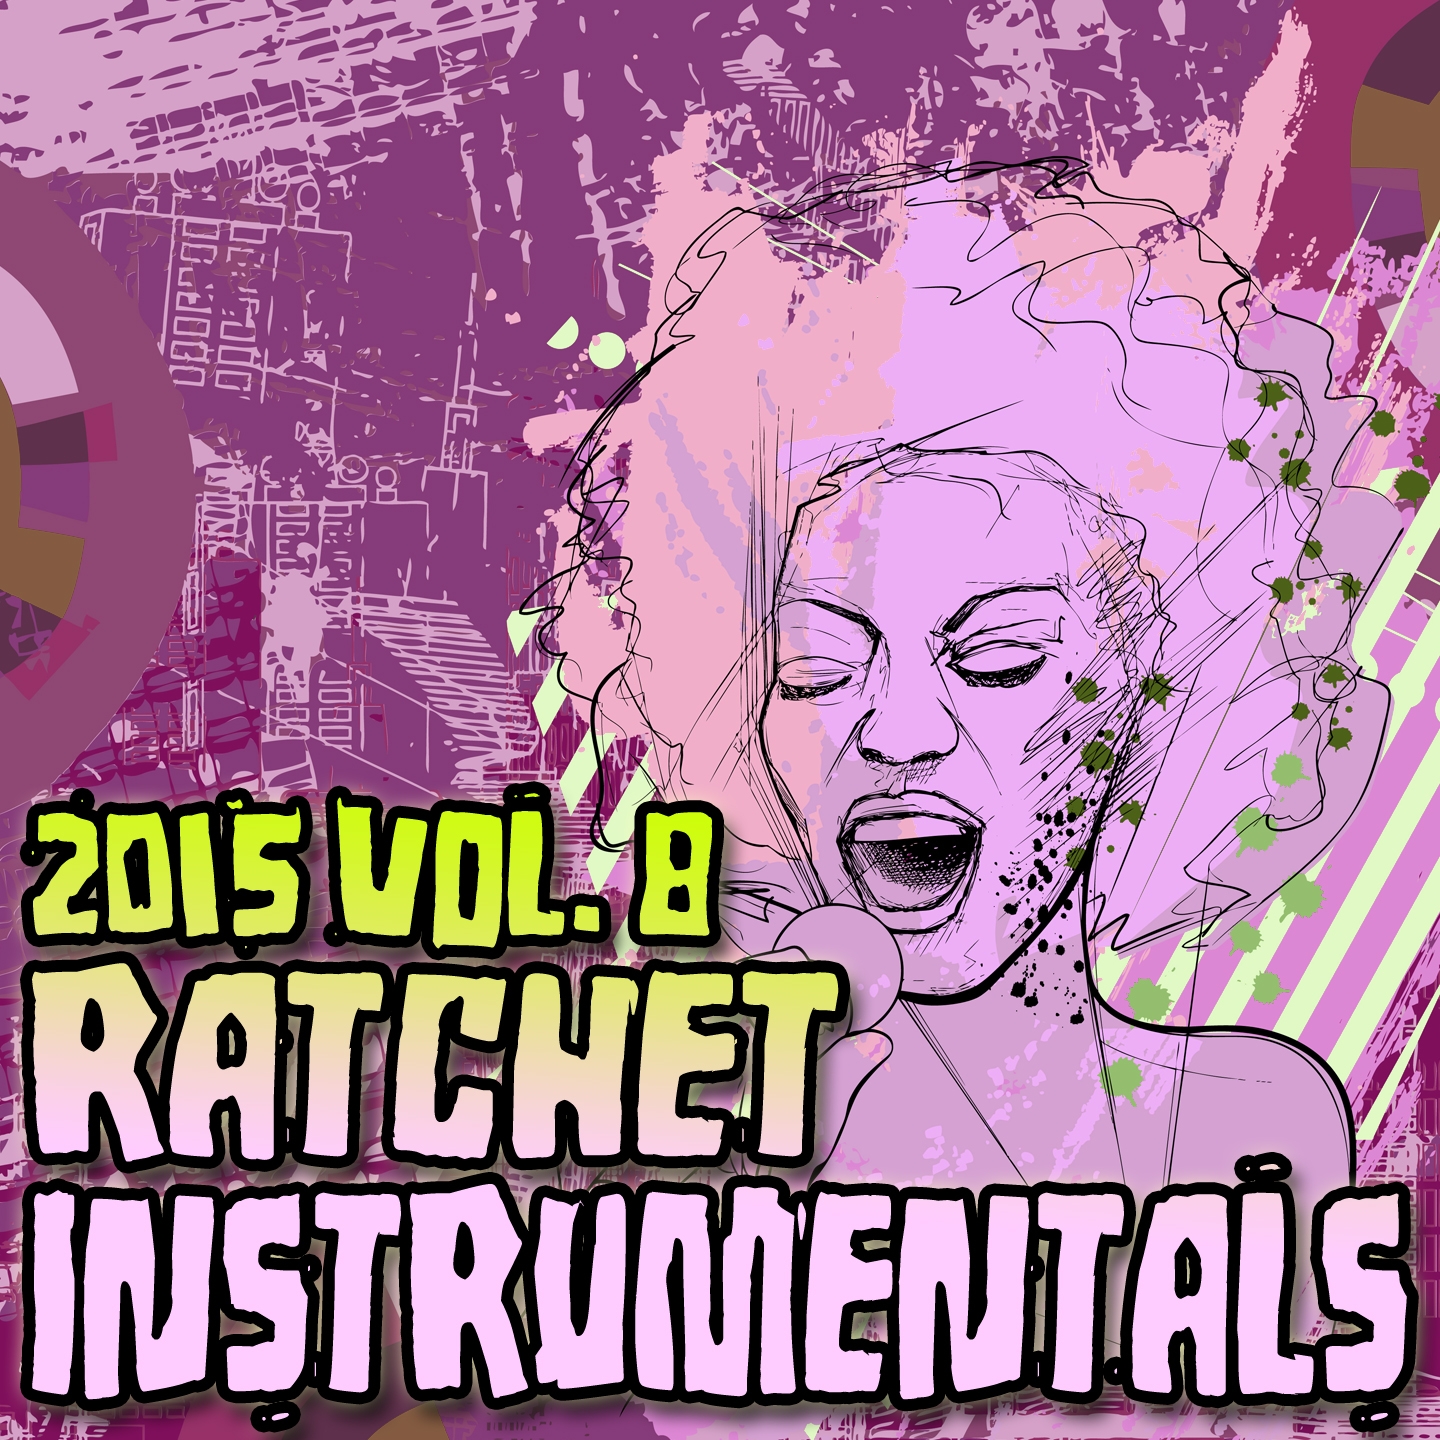 Ratchet Instrumentals 2015, Vol. 8